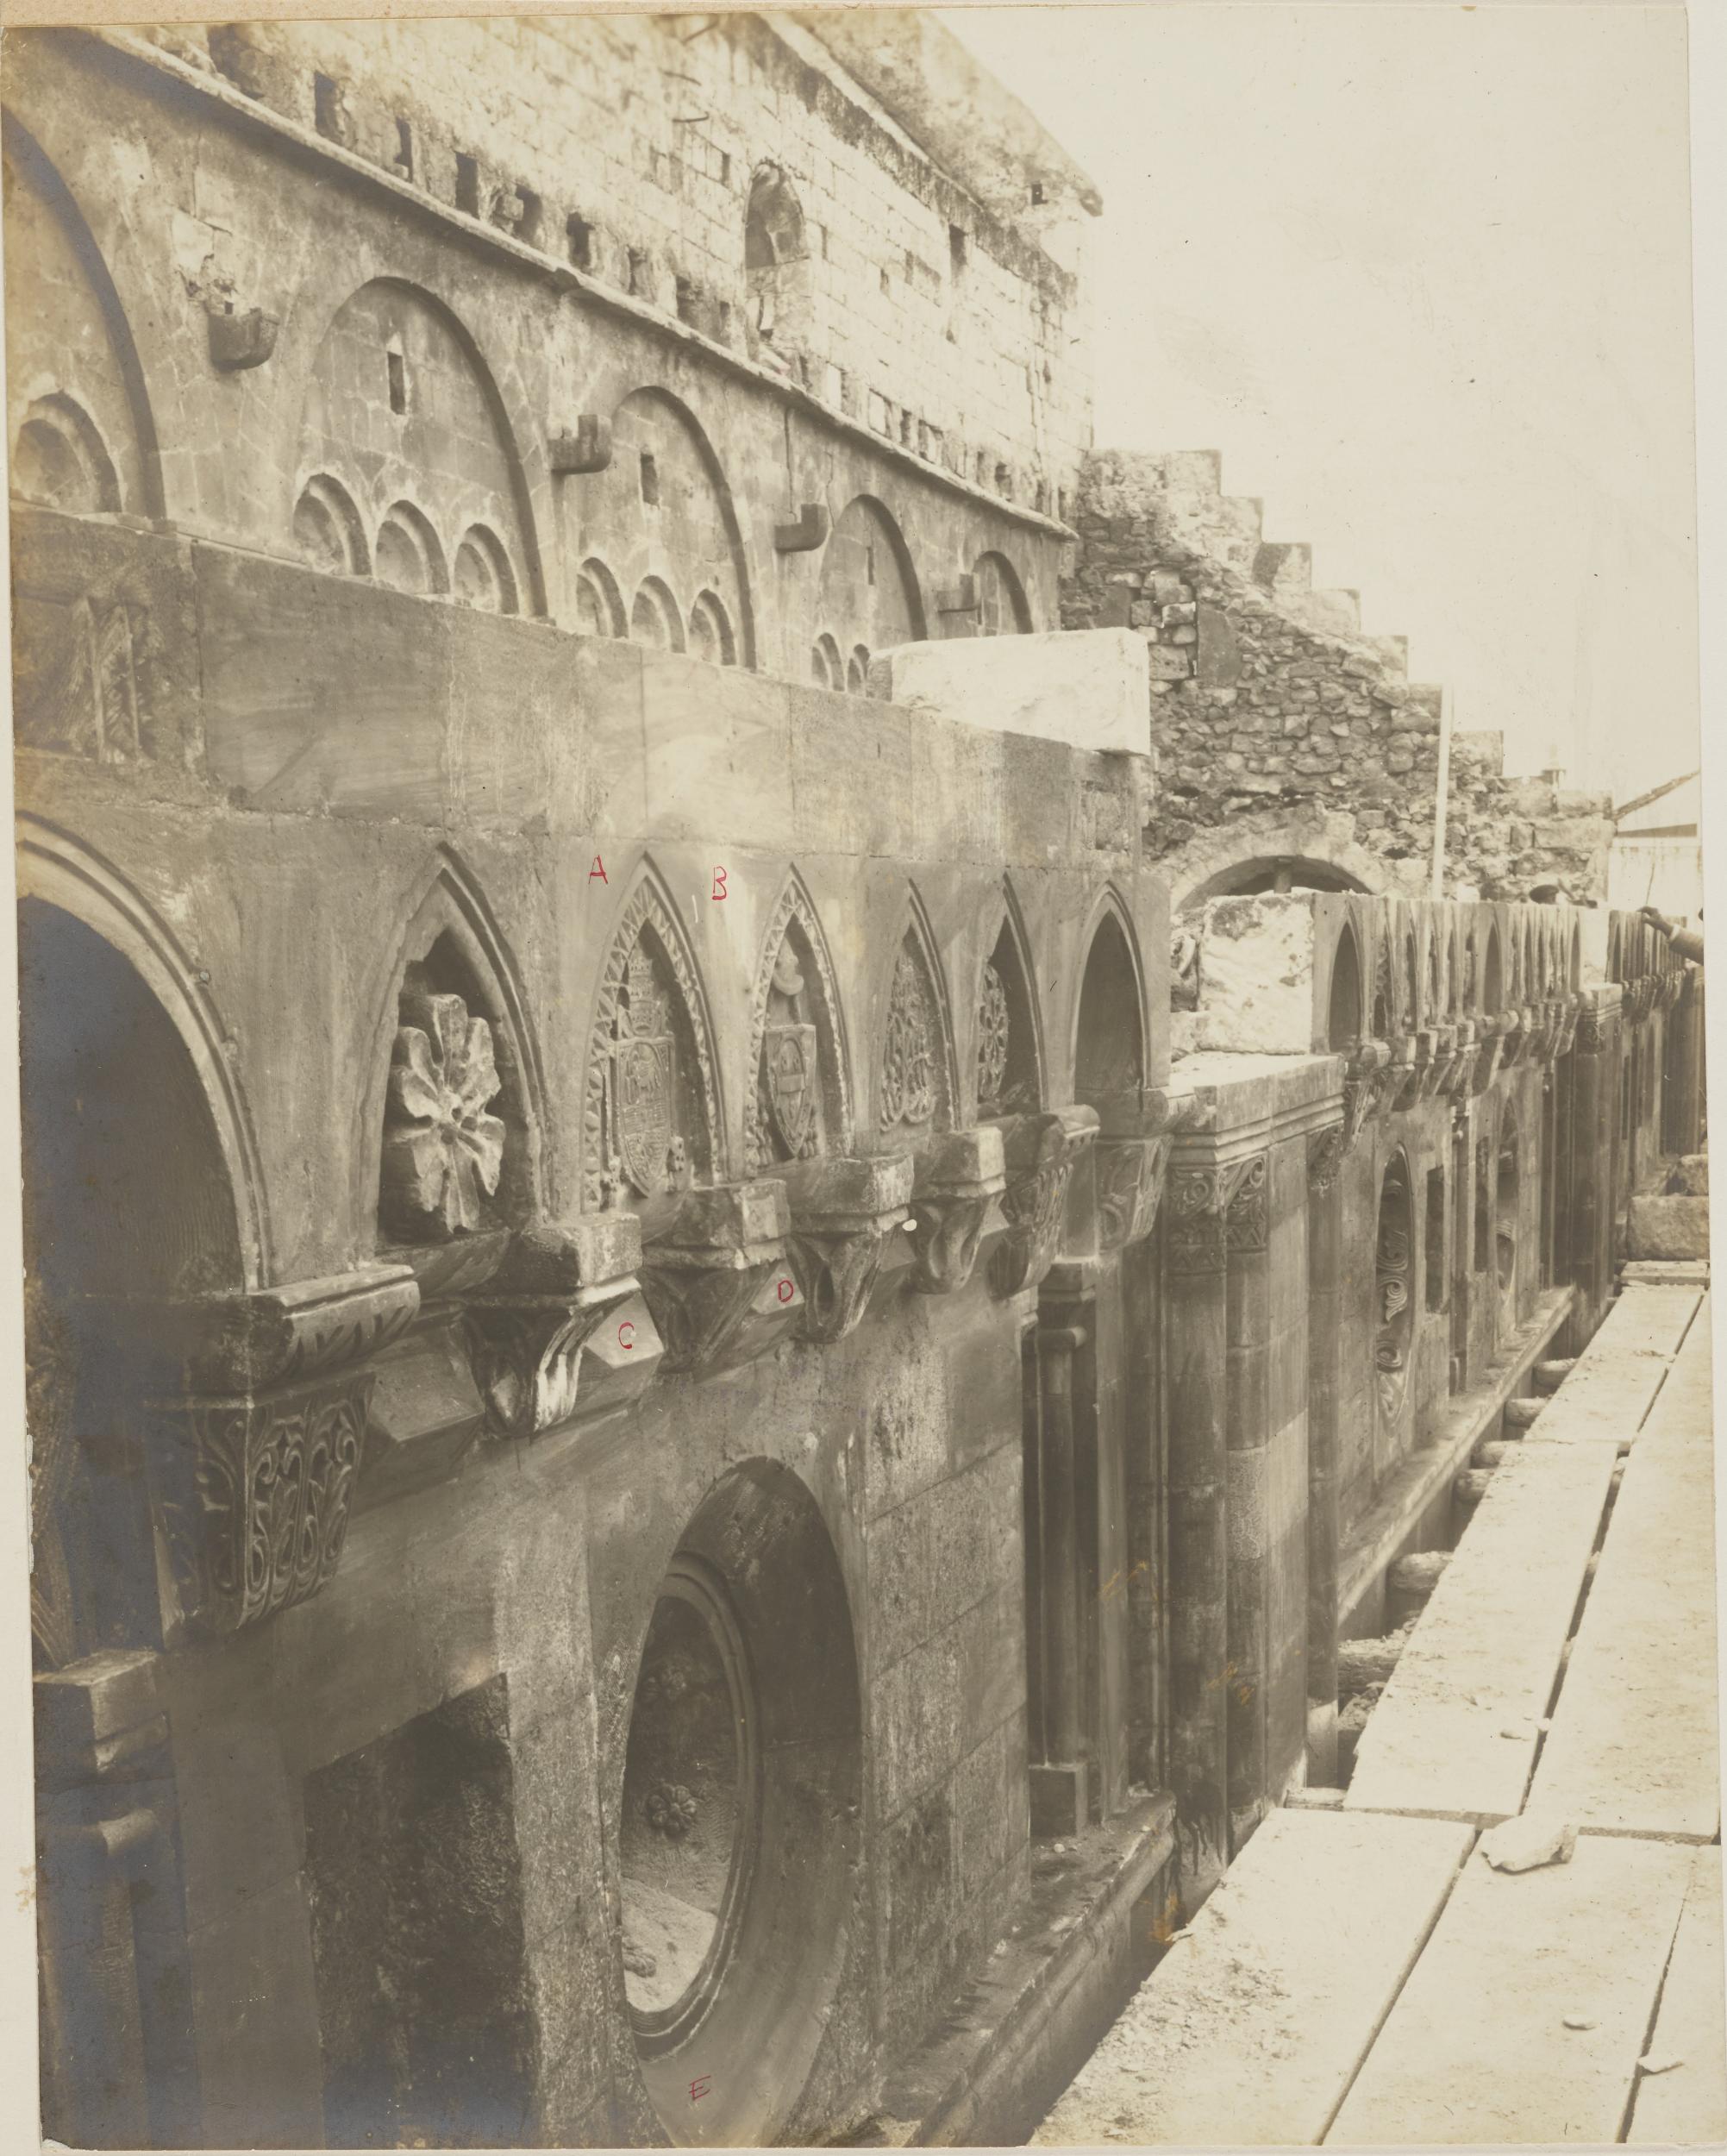 Fotografo non identificato, Conversano - Cattedrale, fiancata durante i restauri del 1912-14, 1901-1925, gelatina ai sali d'argento/carta, MPI155328